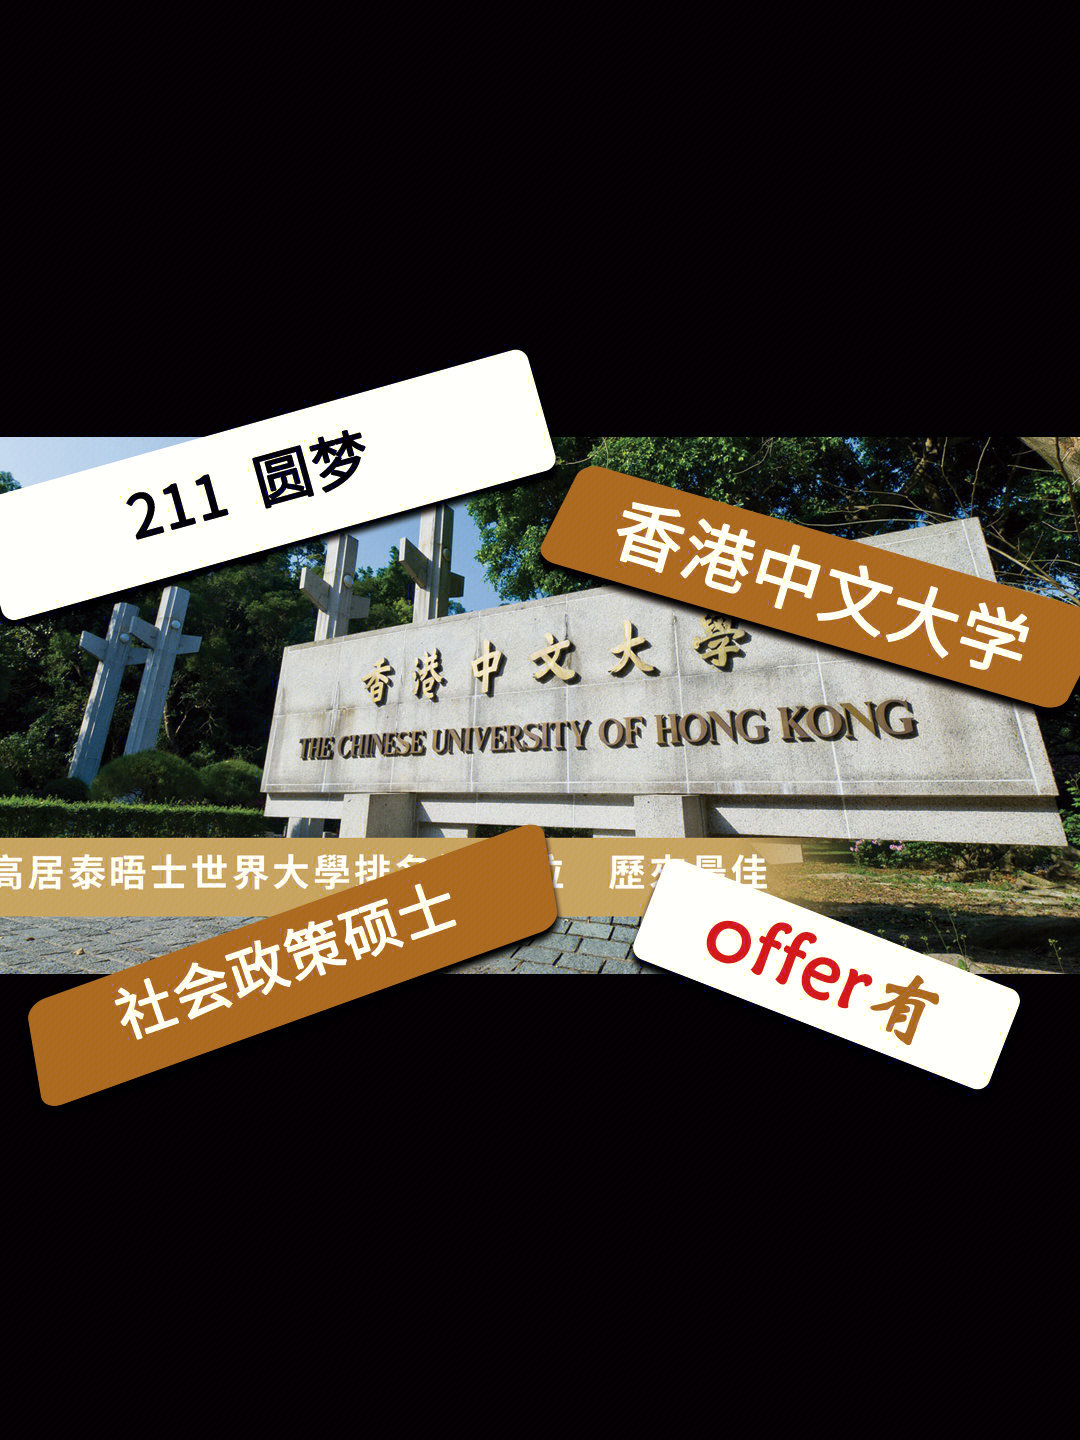 211专业:经济学gpa:87语言:雅思7录取:香港中文大学 社会政策硕士如果